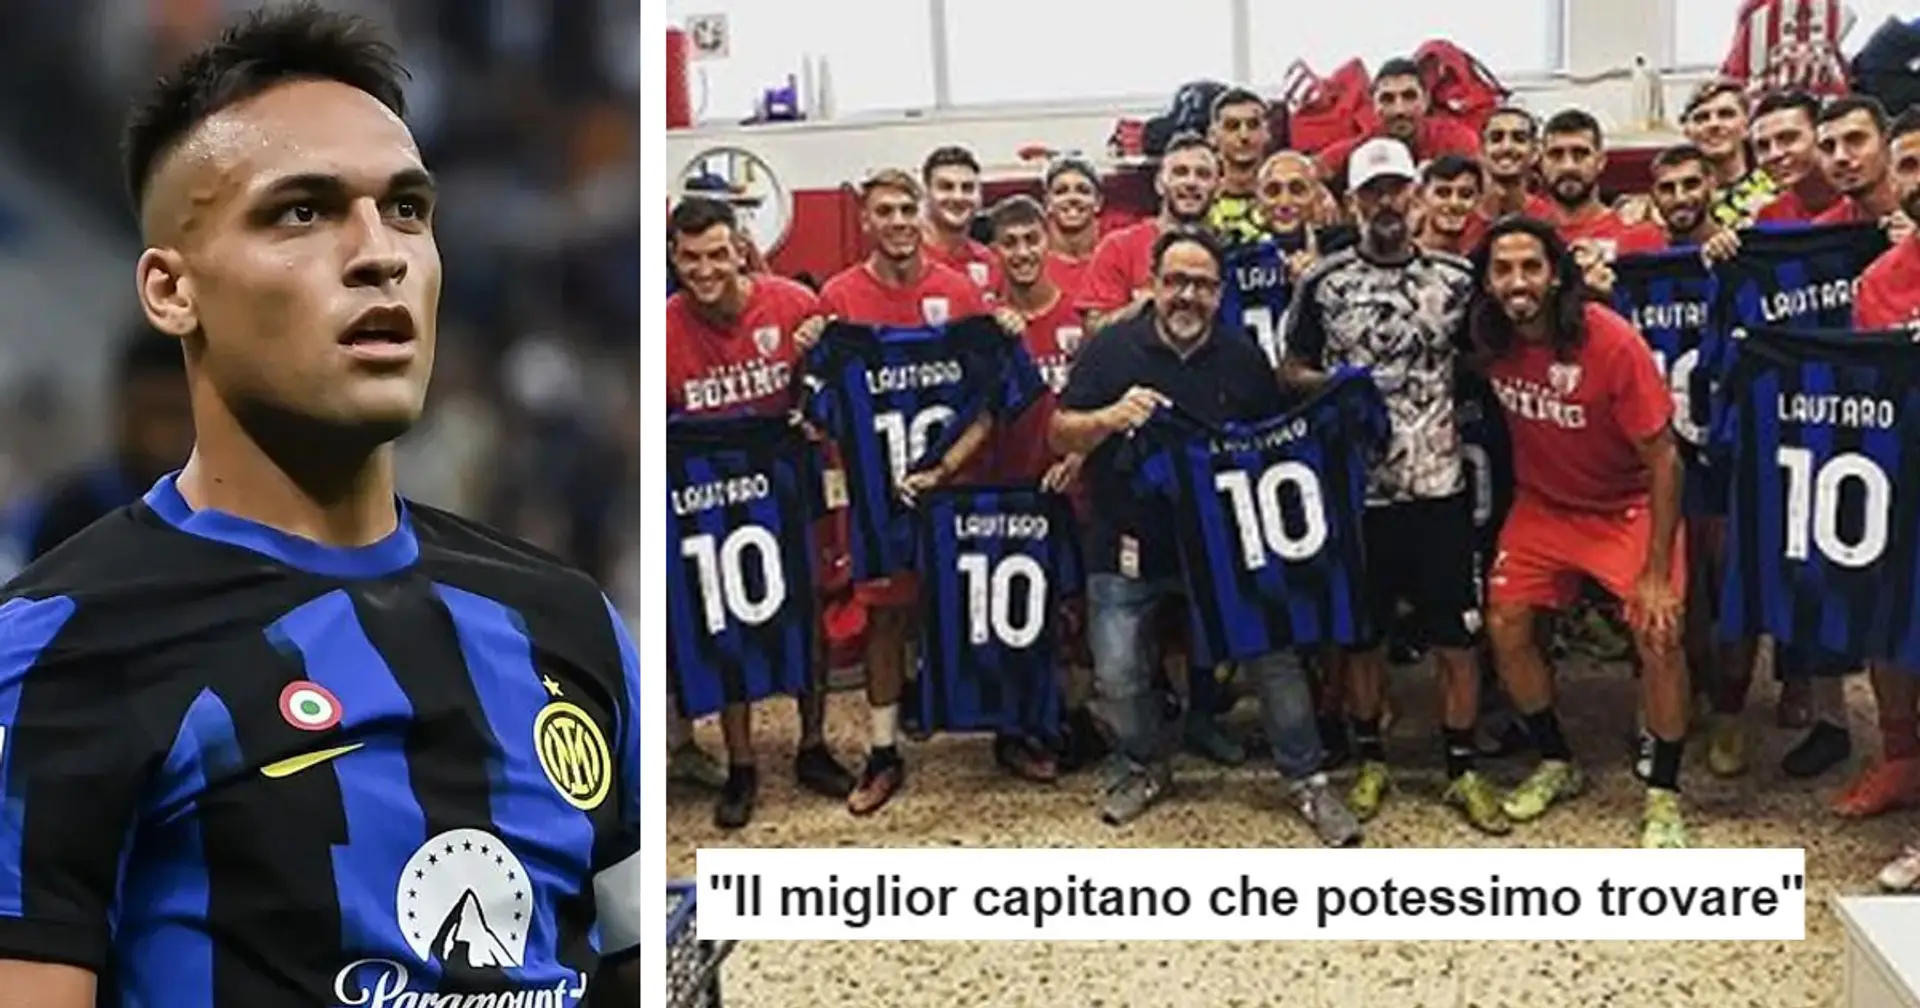 "Il miglior capitano che potessimo trovare", i tifosi dell'Inter esaltano l'ultimo gesto di Lautaro Martinez